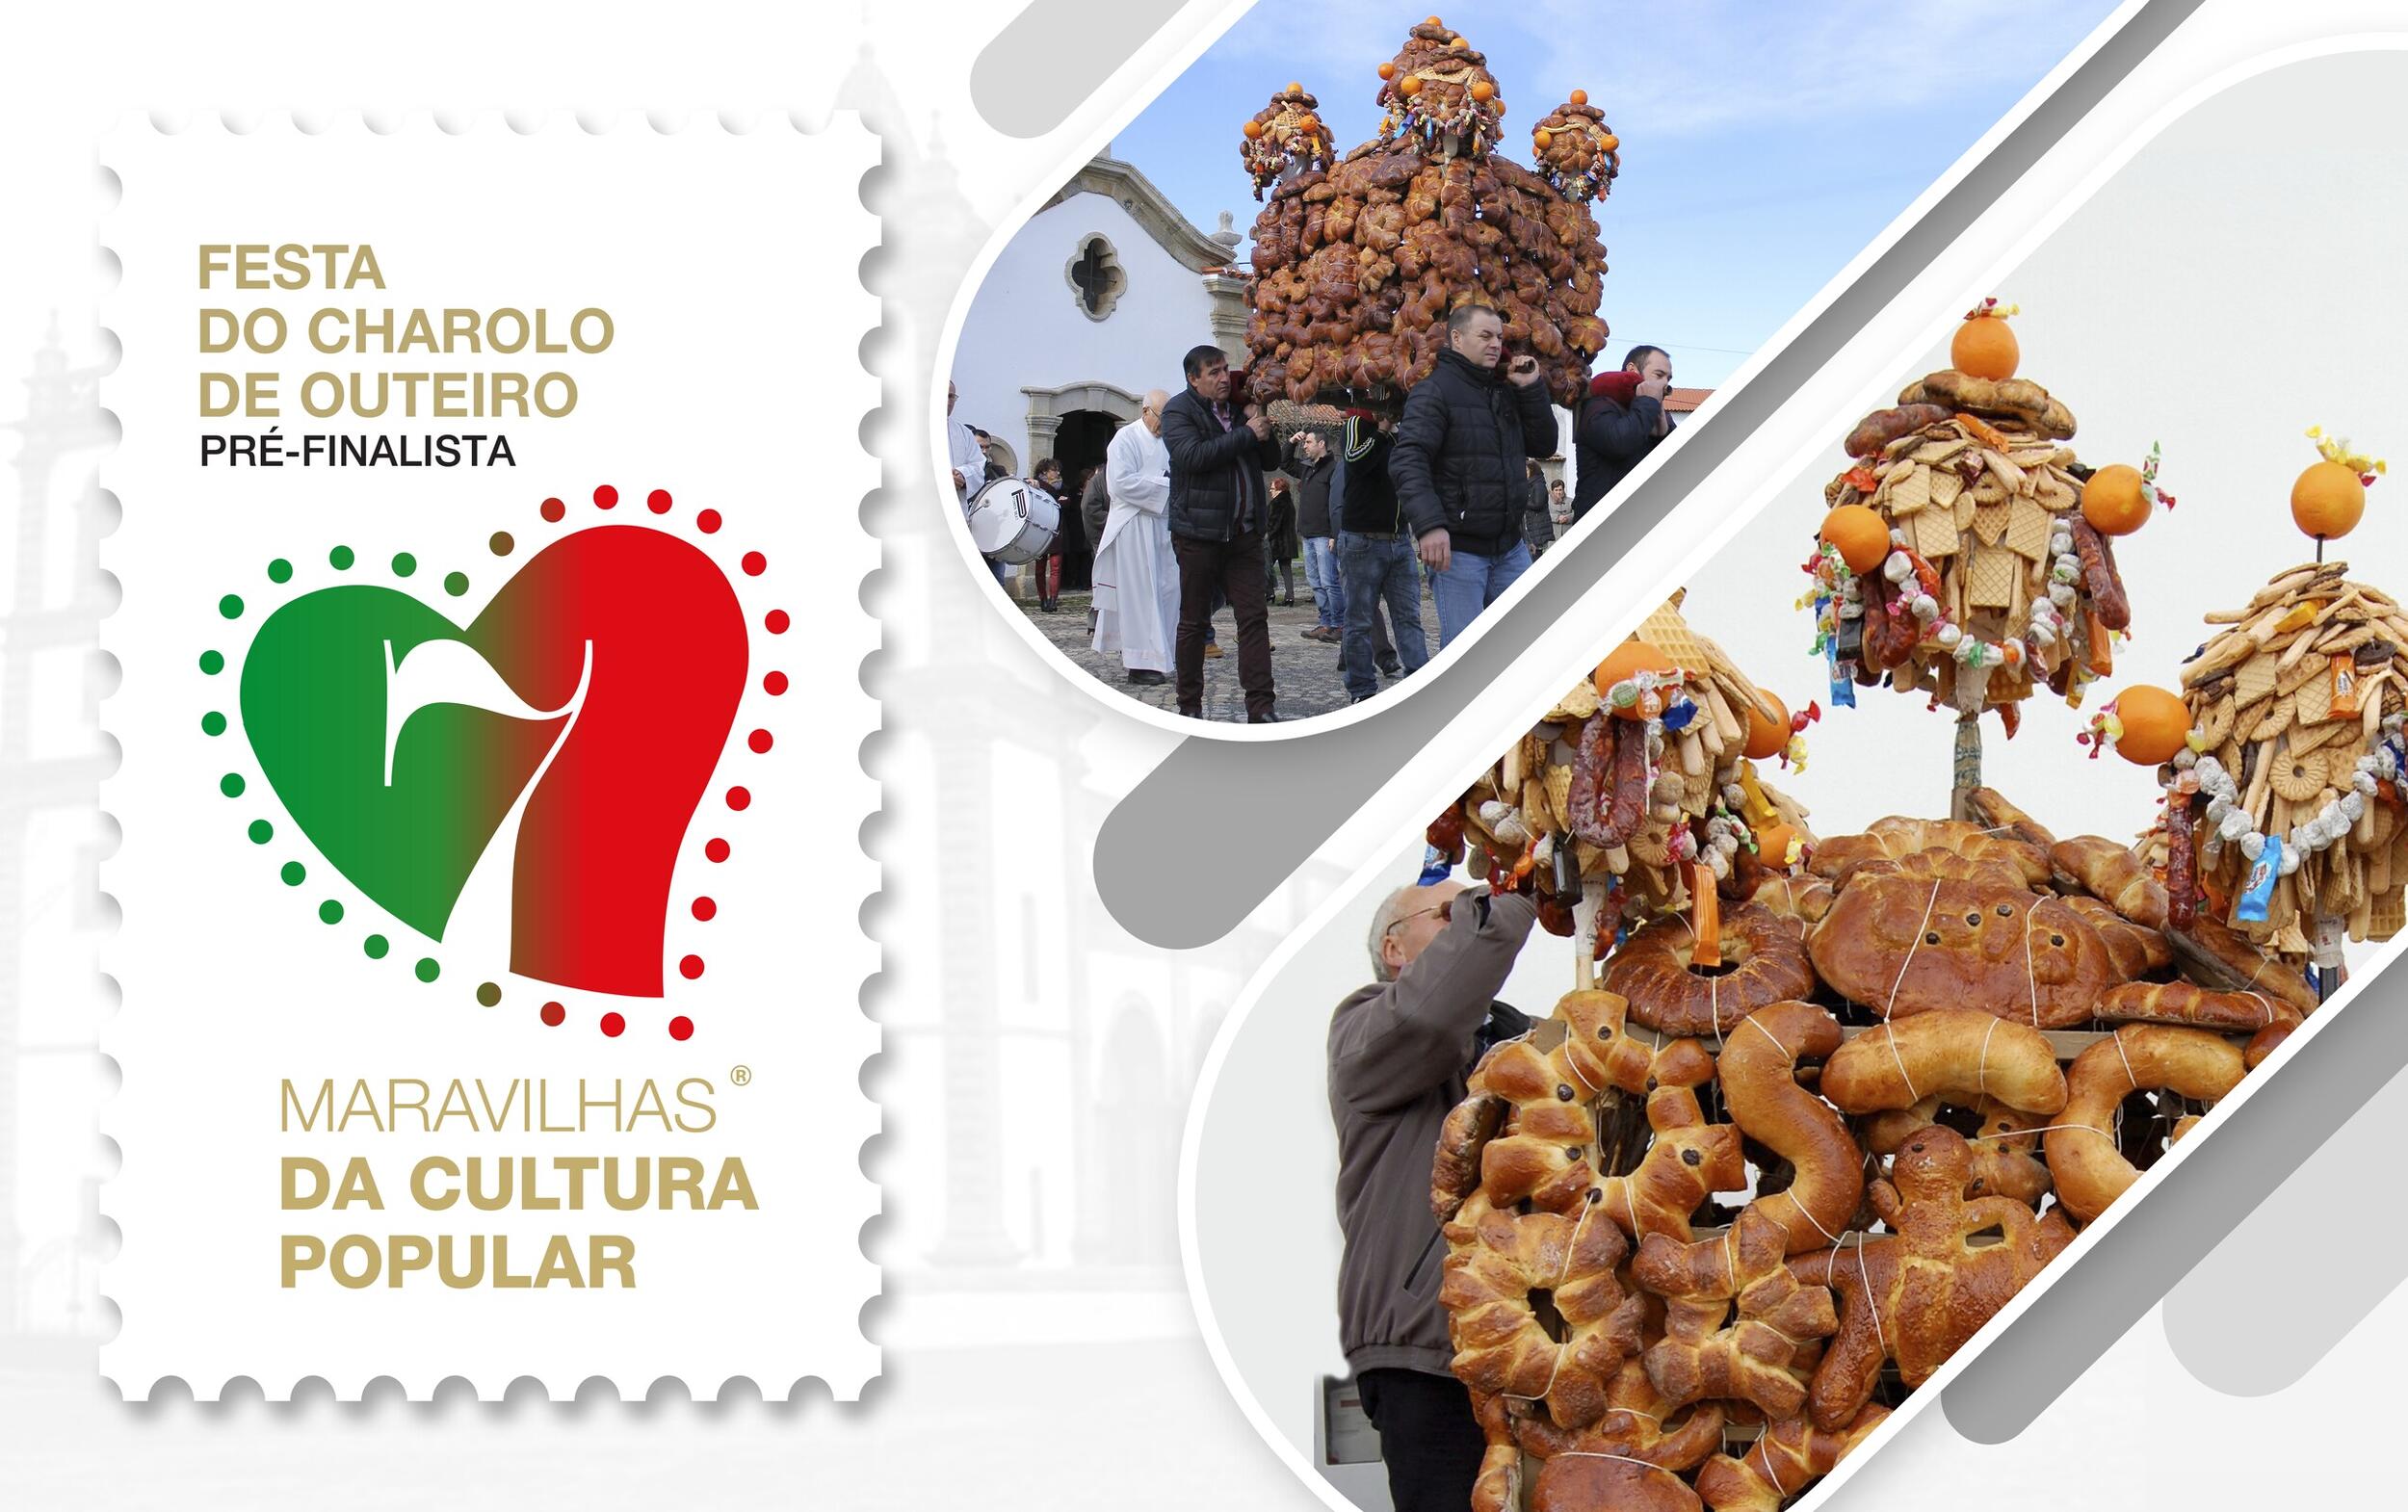 Festa do Charolo de Outeiro | Votação - 7 Maravilhas de Portugal da Cultura Popular